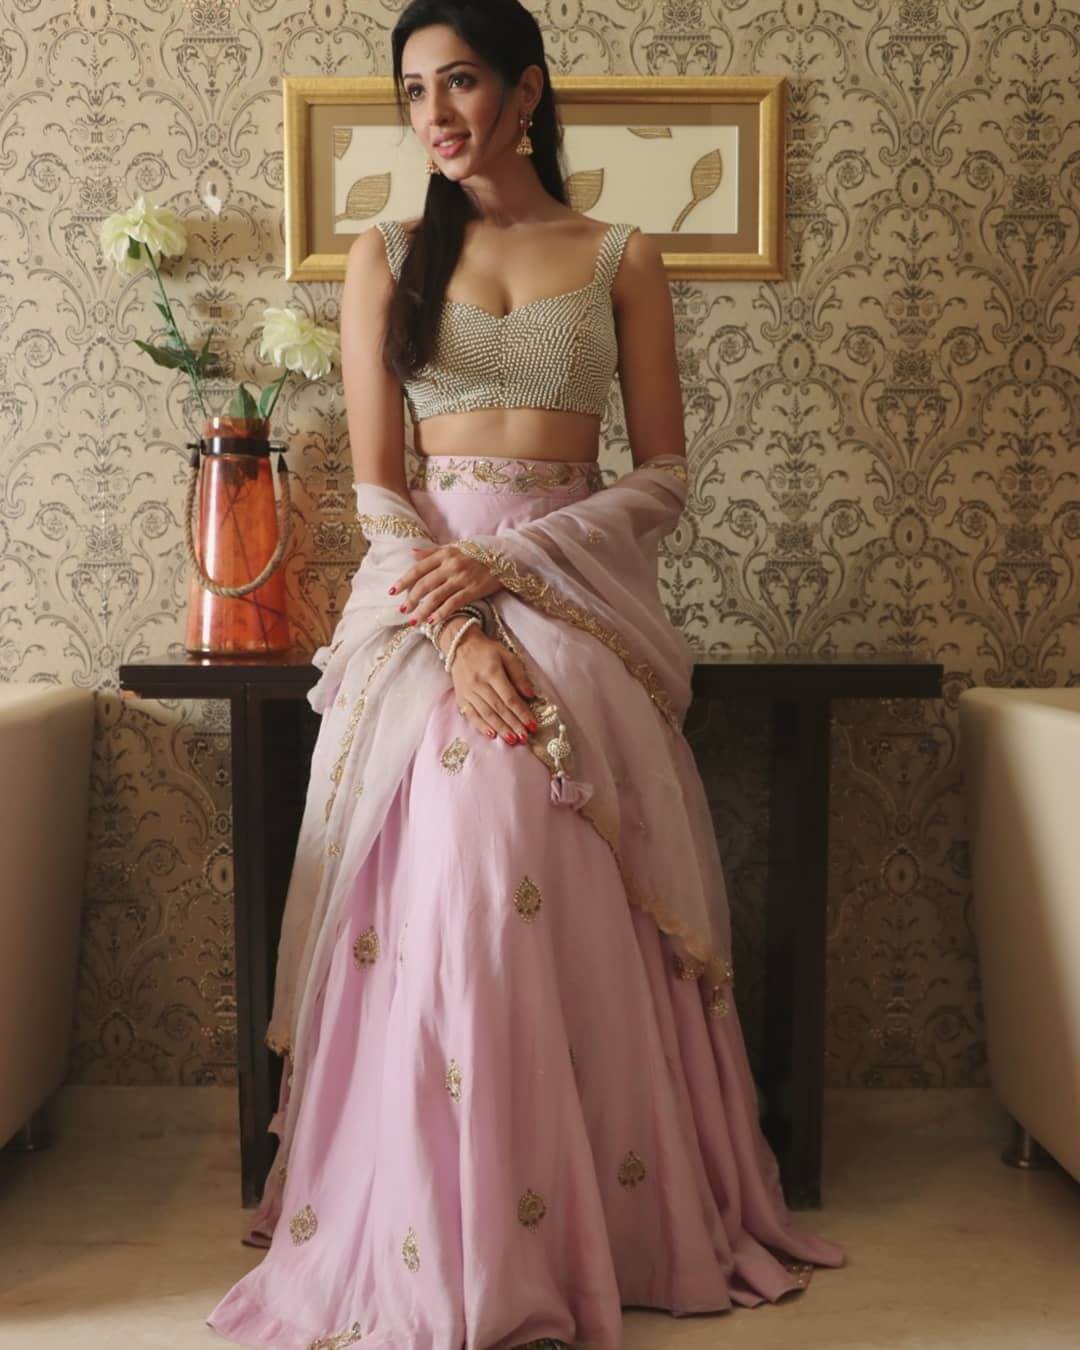 Riya Suman In Shilpa Reddy Studio Outfit Wearing Light Pink Embellished Lehenga